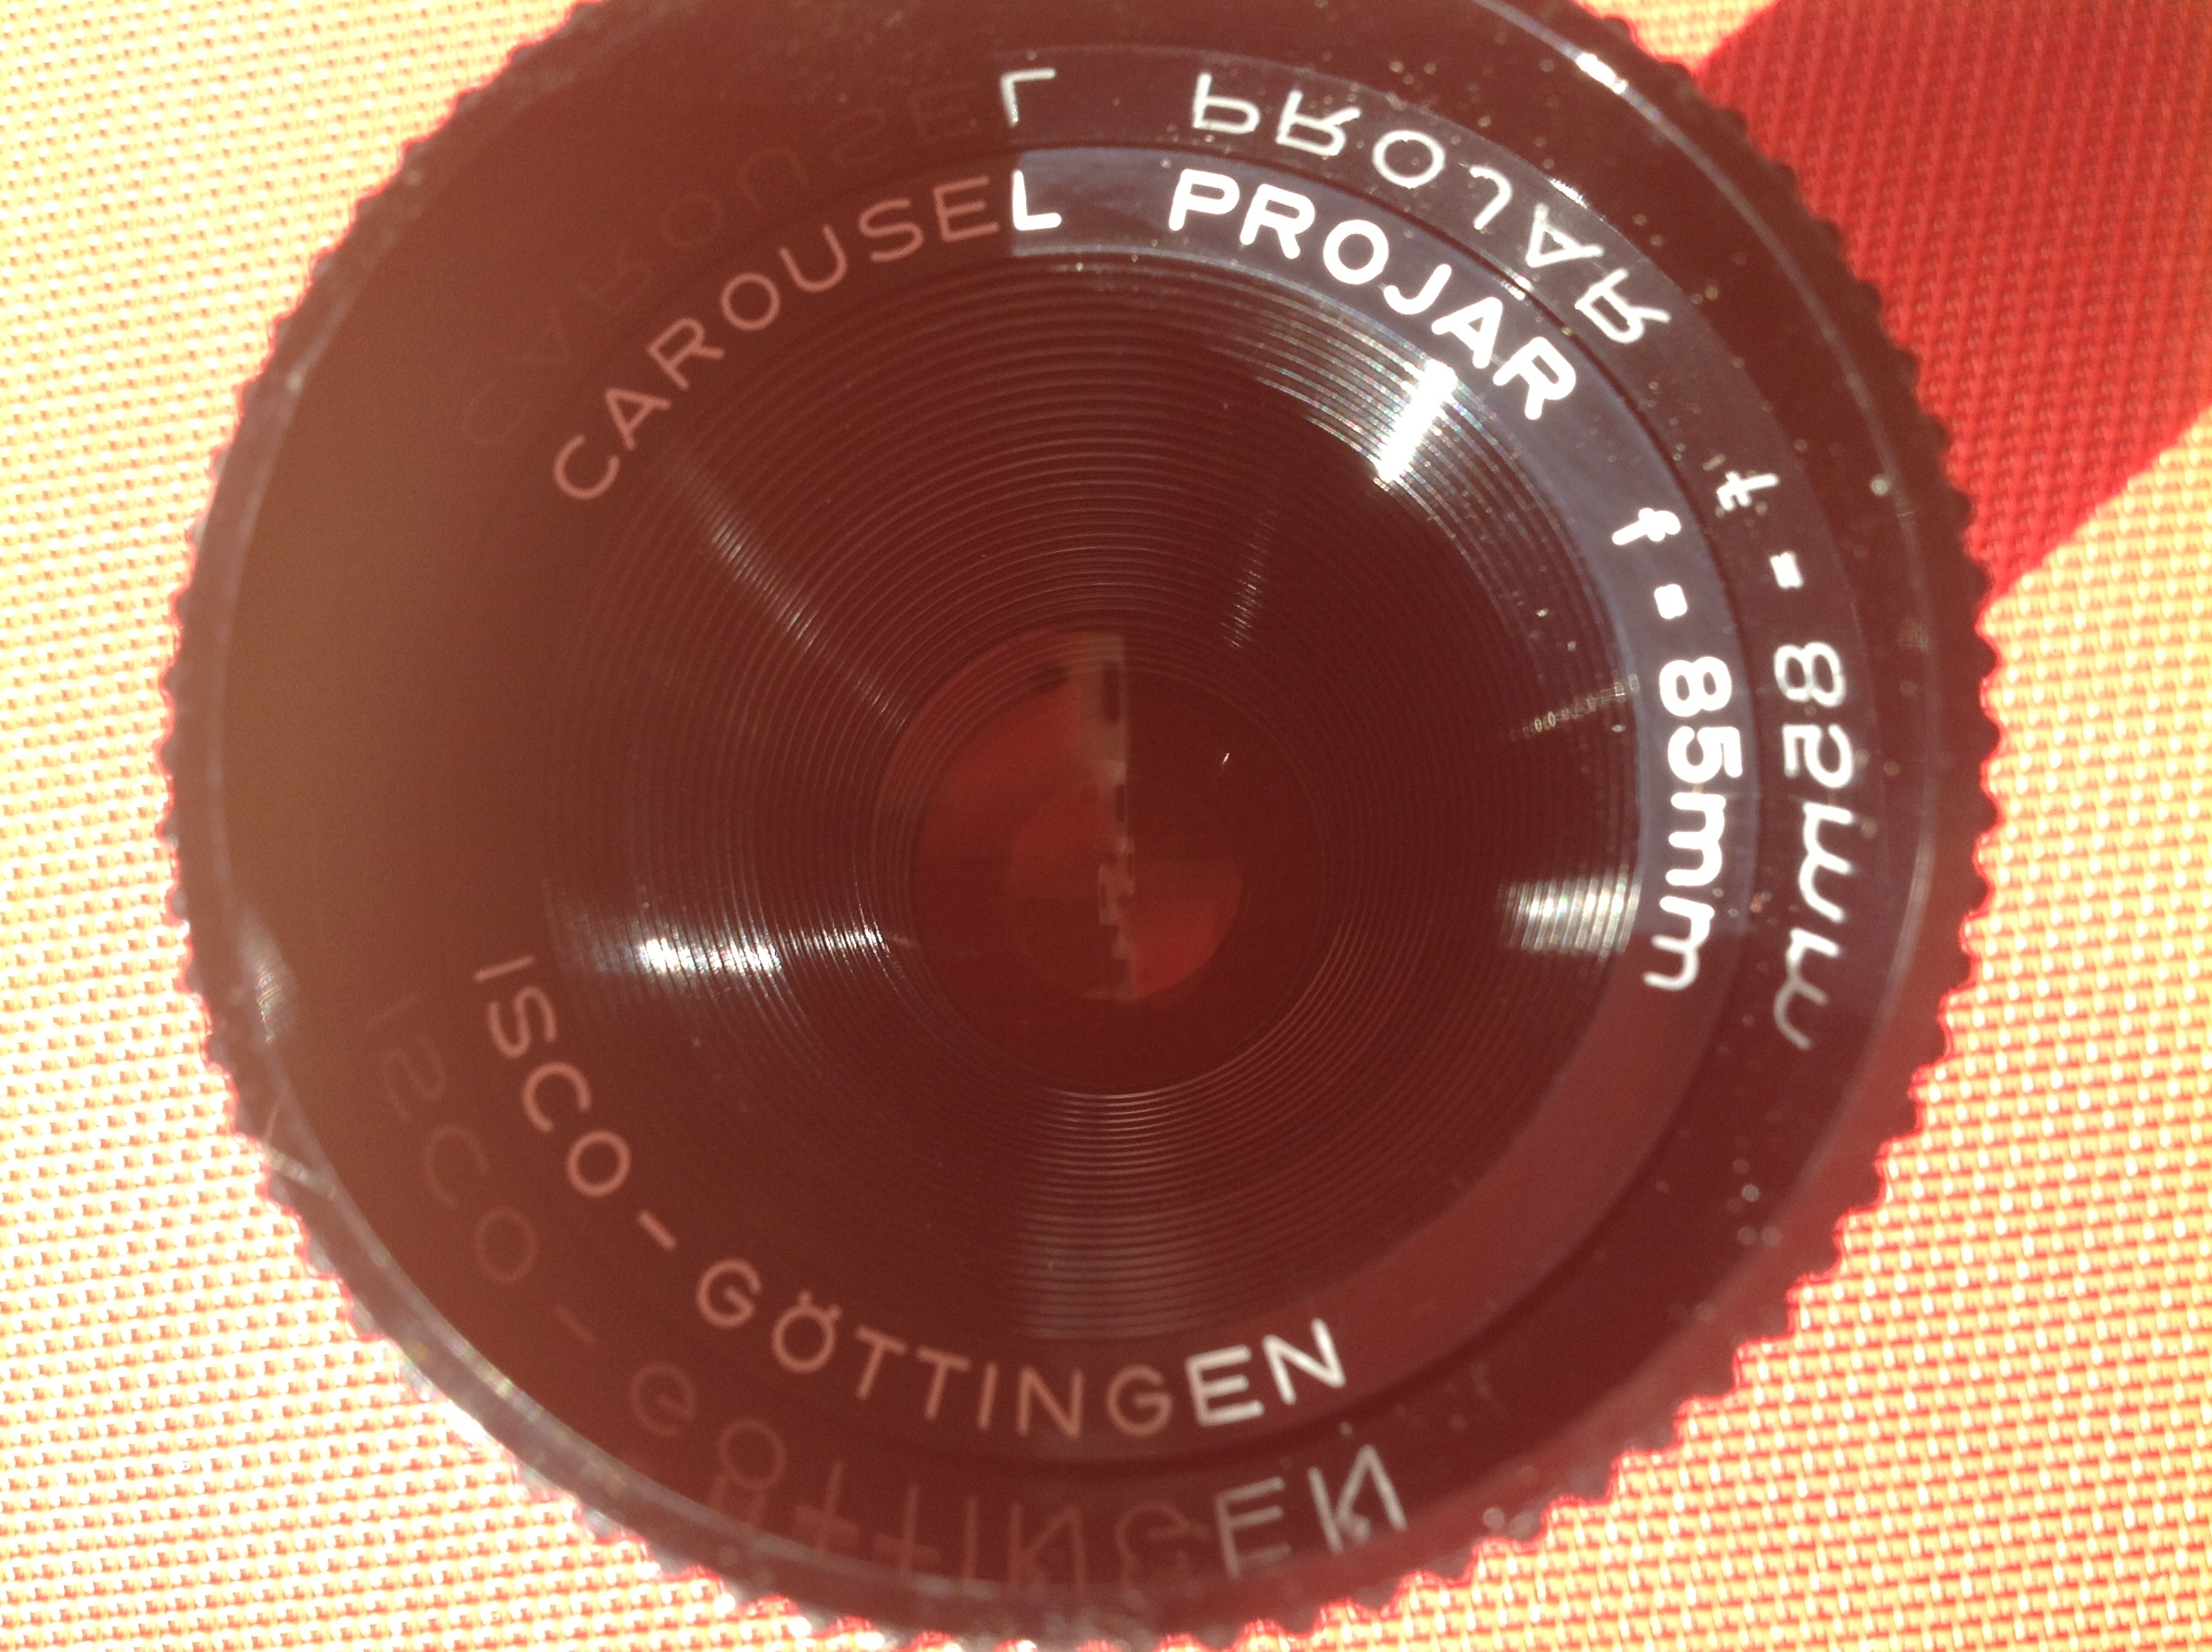 Kodak Objekiv Projar f=85 mm für Kodak Carousel S-AV 2000 Projektor